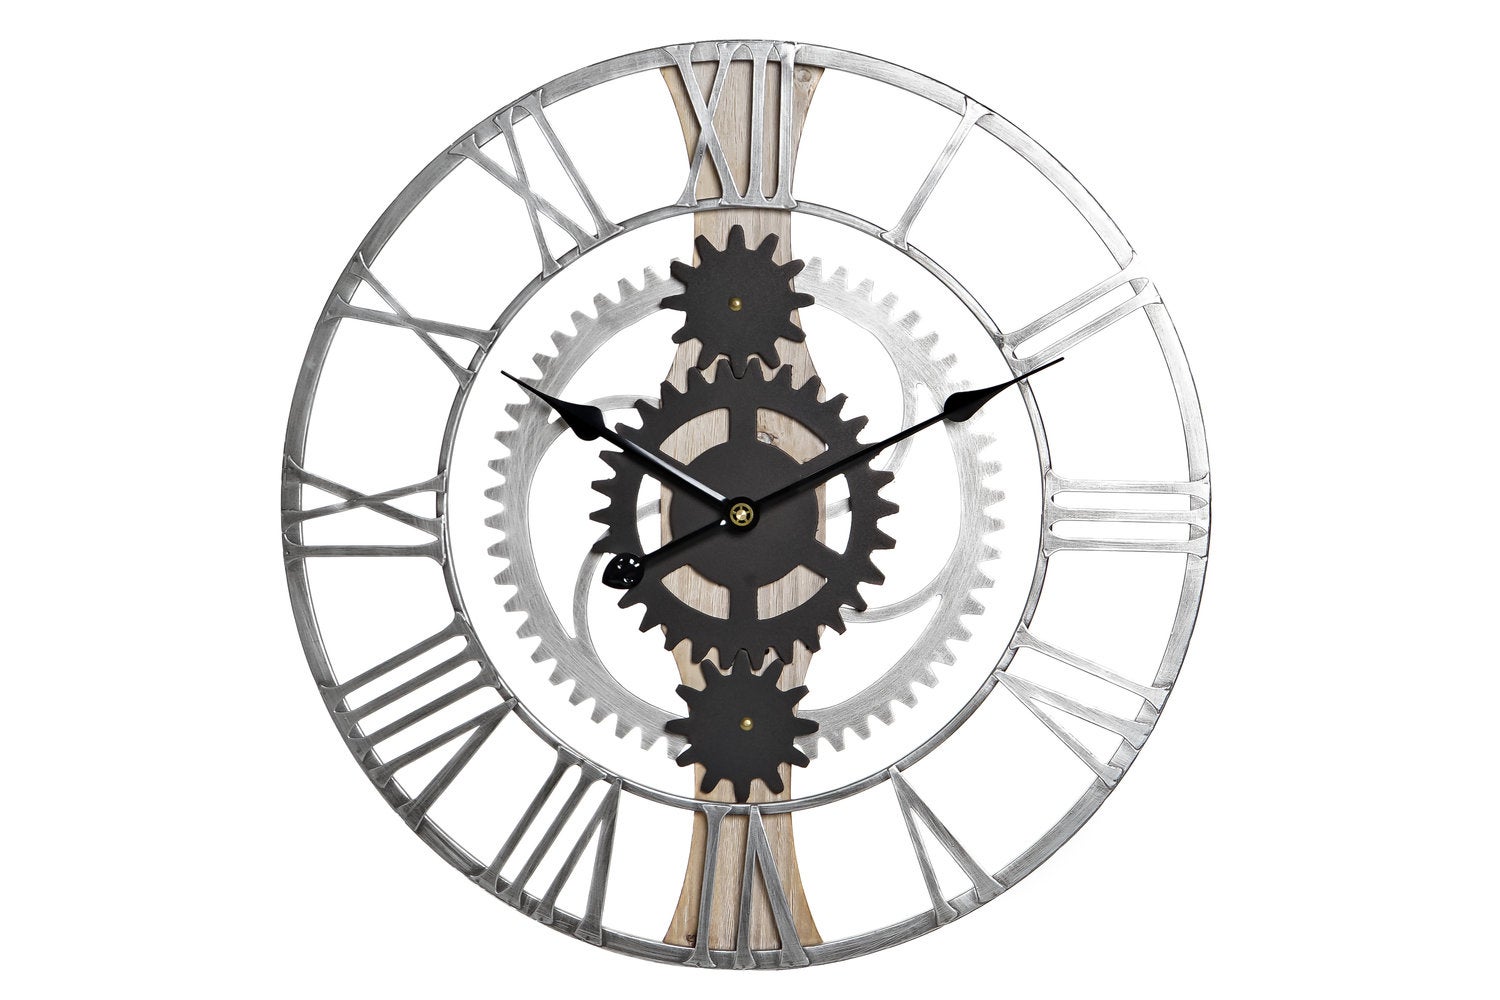 Fisura - Reloj de cuco menta, rosa y blanco. Reloj pared original para  regalo. 3 Pilas AA no incluidas. Medidas: 21,5 x 8 x 41,5. Plástico ABS